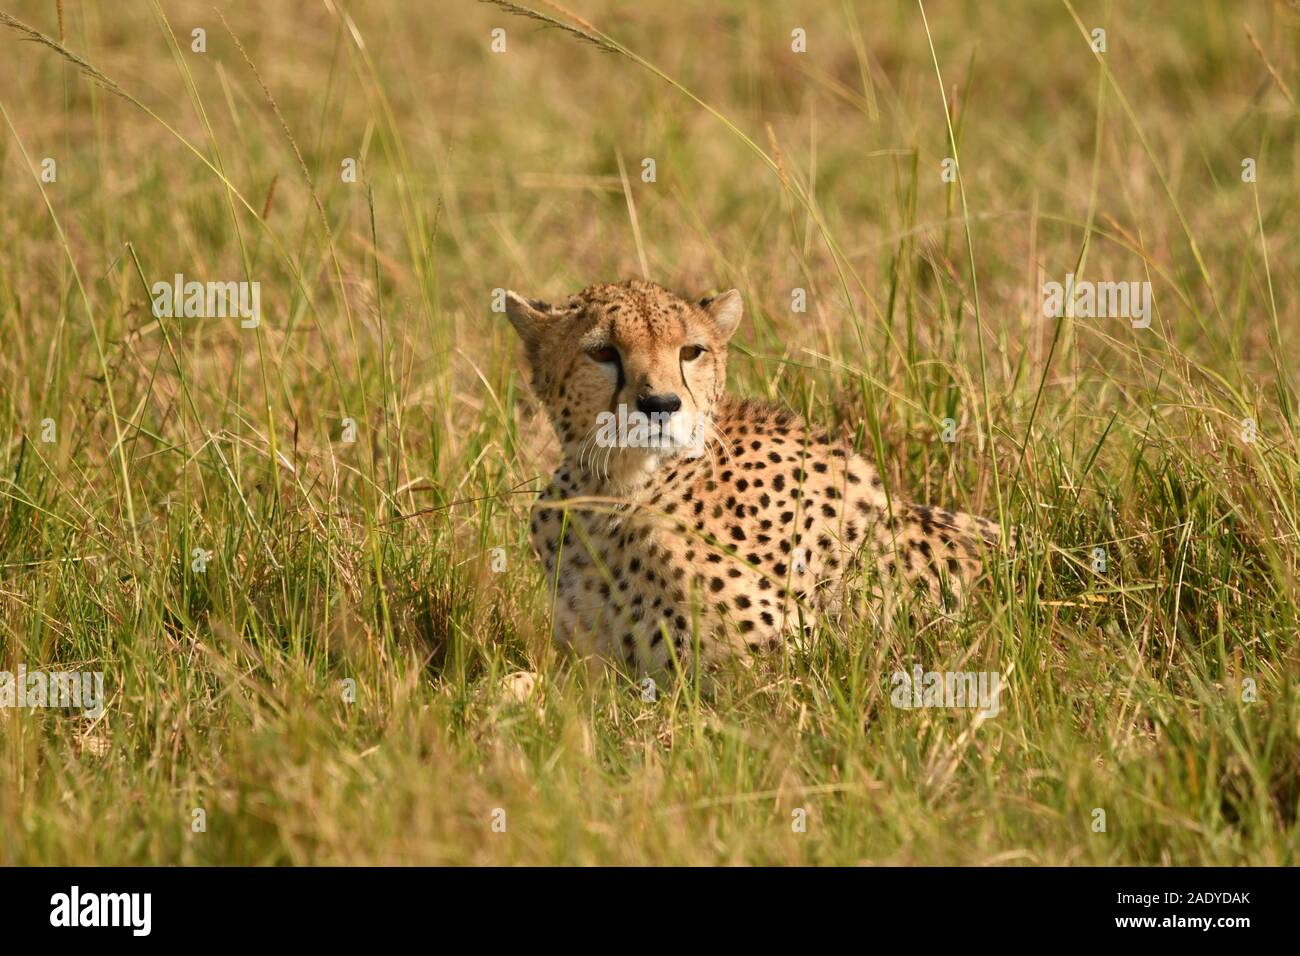 Eine Gepardin in Kenia Masai Mara zeigt ihre schönen Gesicht durch einige nicht vertraute Ton gestört worden Stockfoto